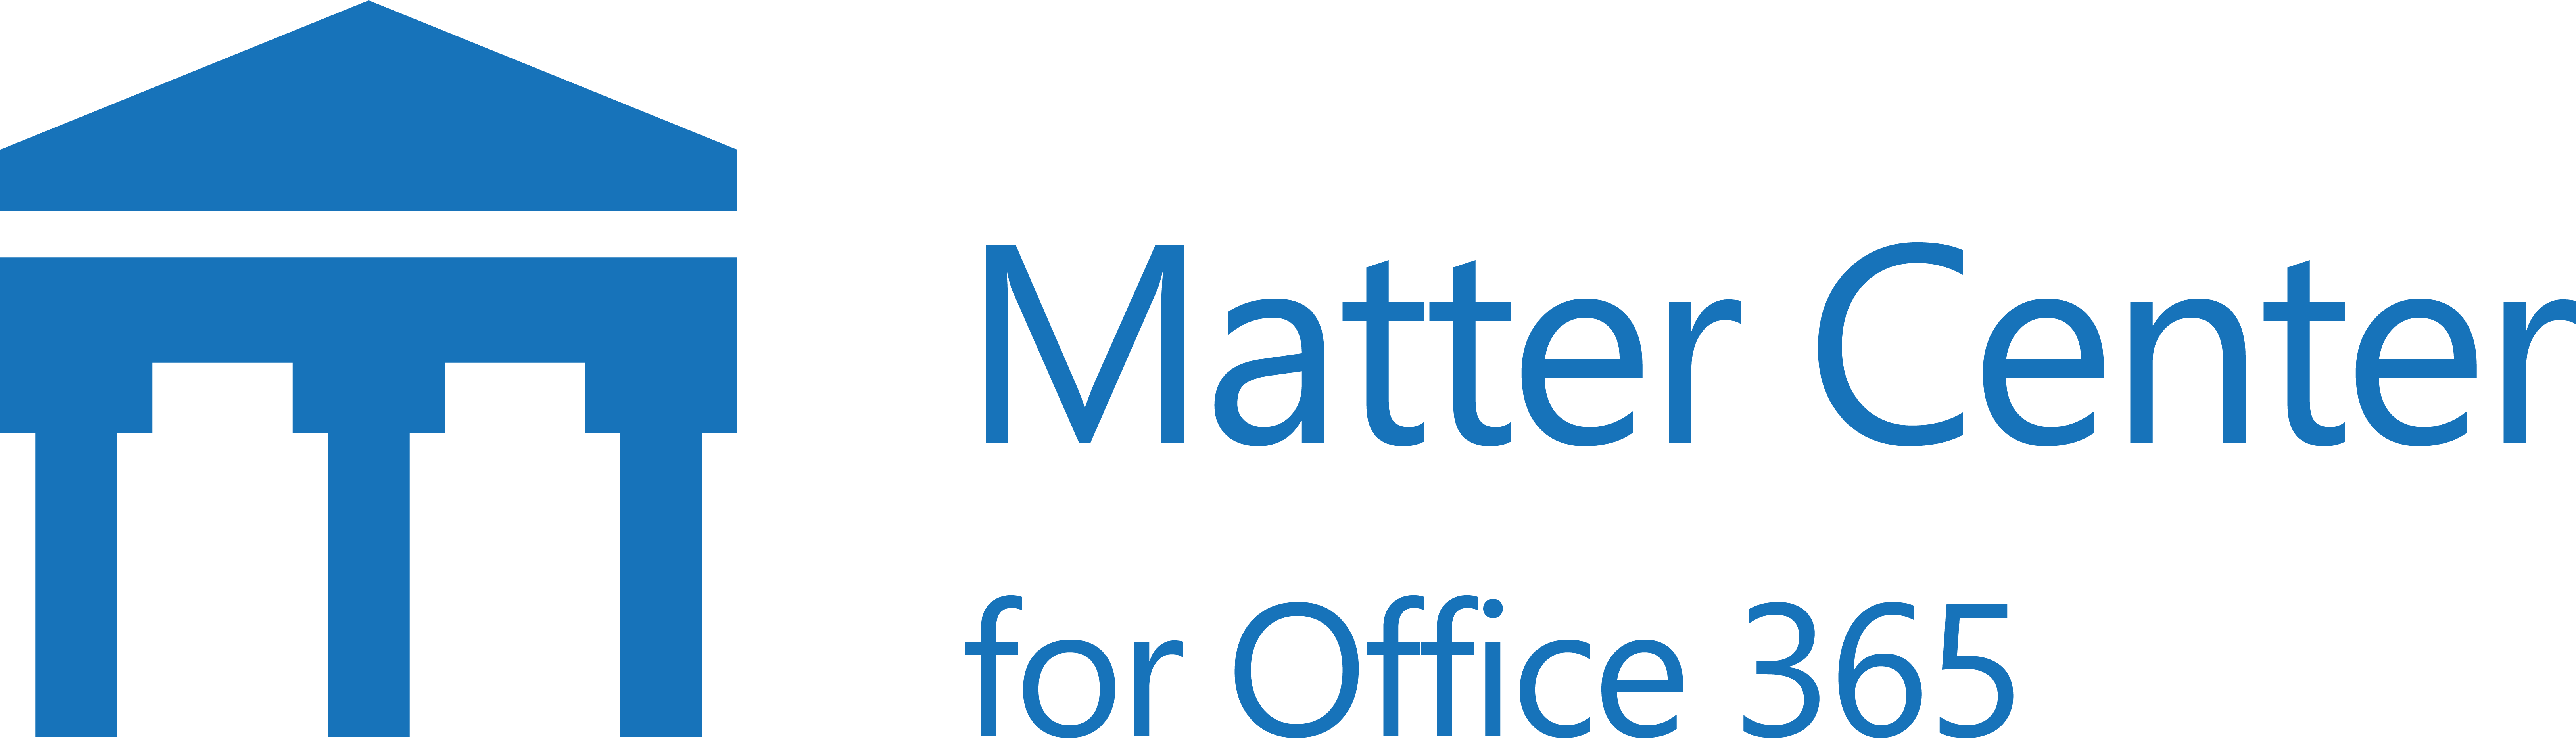 Matter Center Transparent - Microsoft Office (6653x2048)